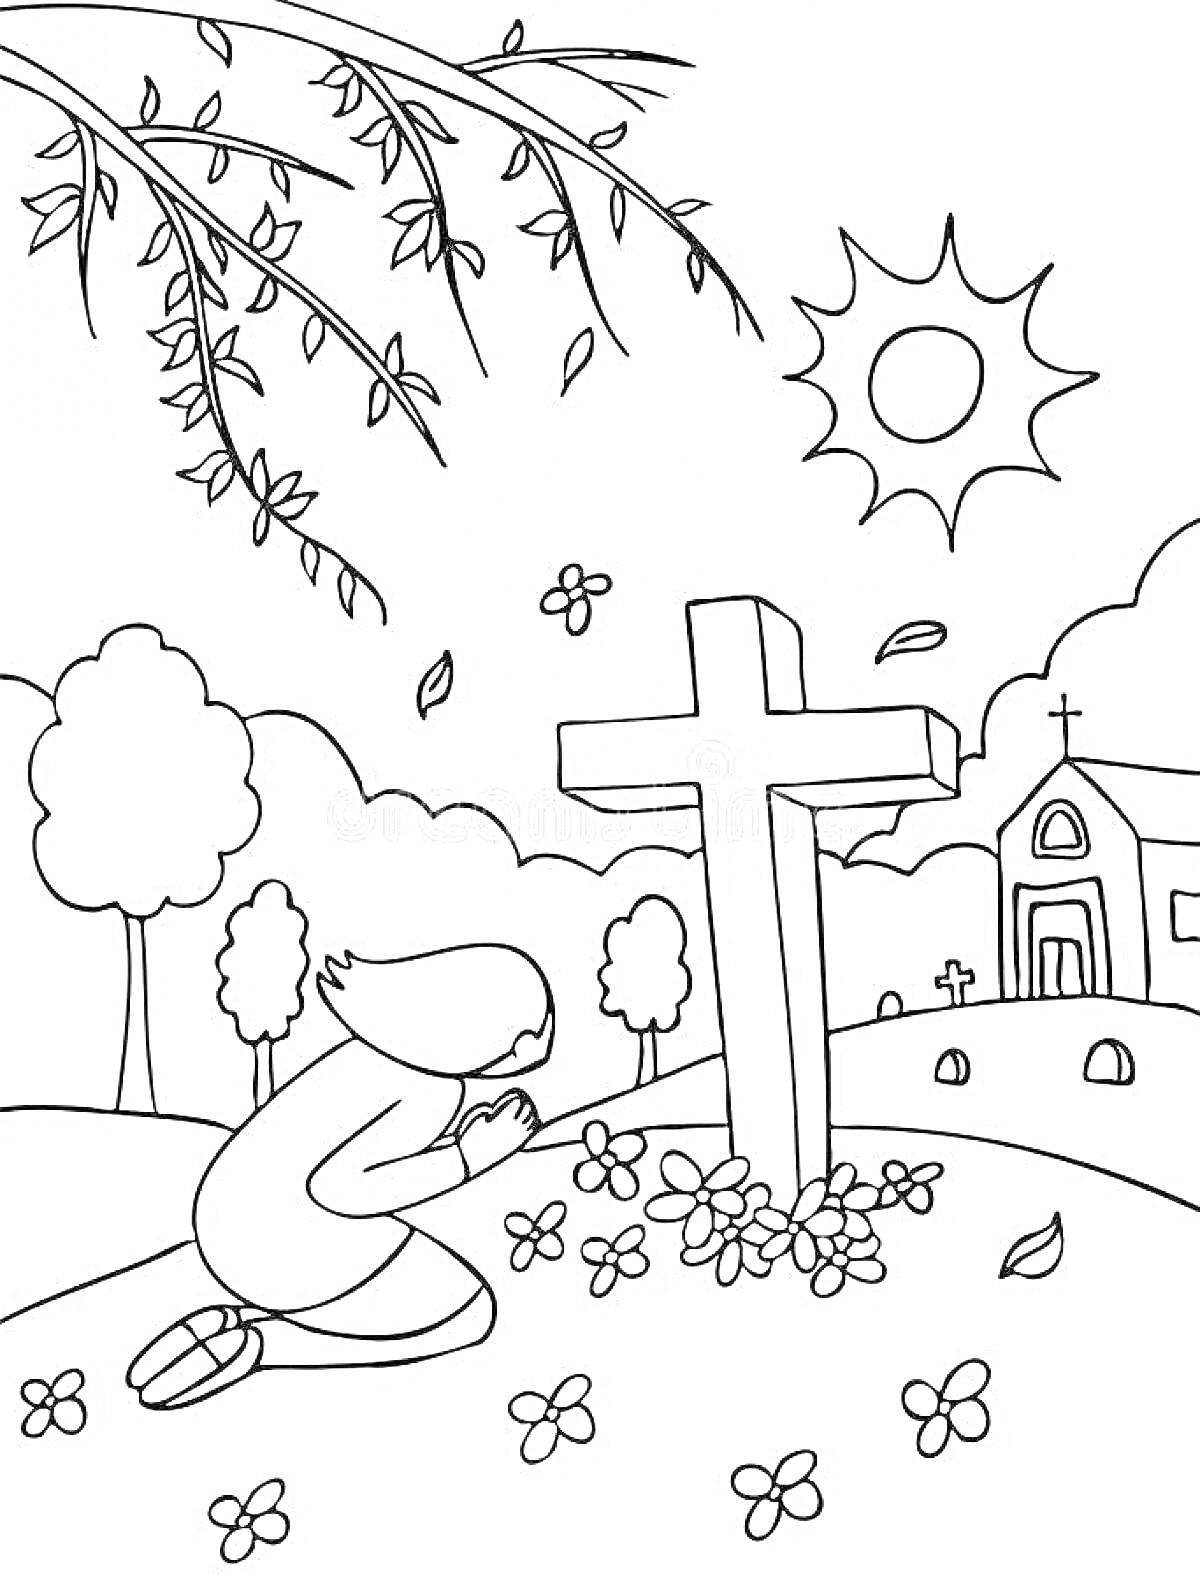 РаскраскаЧеловек на коленях перед могилой с крестом, цветы вокруг, на заднем плане небольшая церковь, деревья и солнечное небо